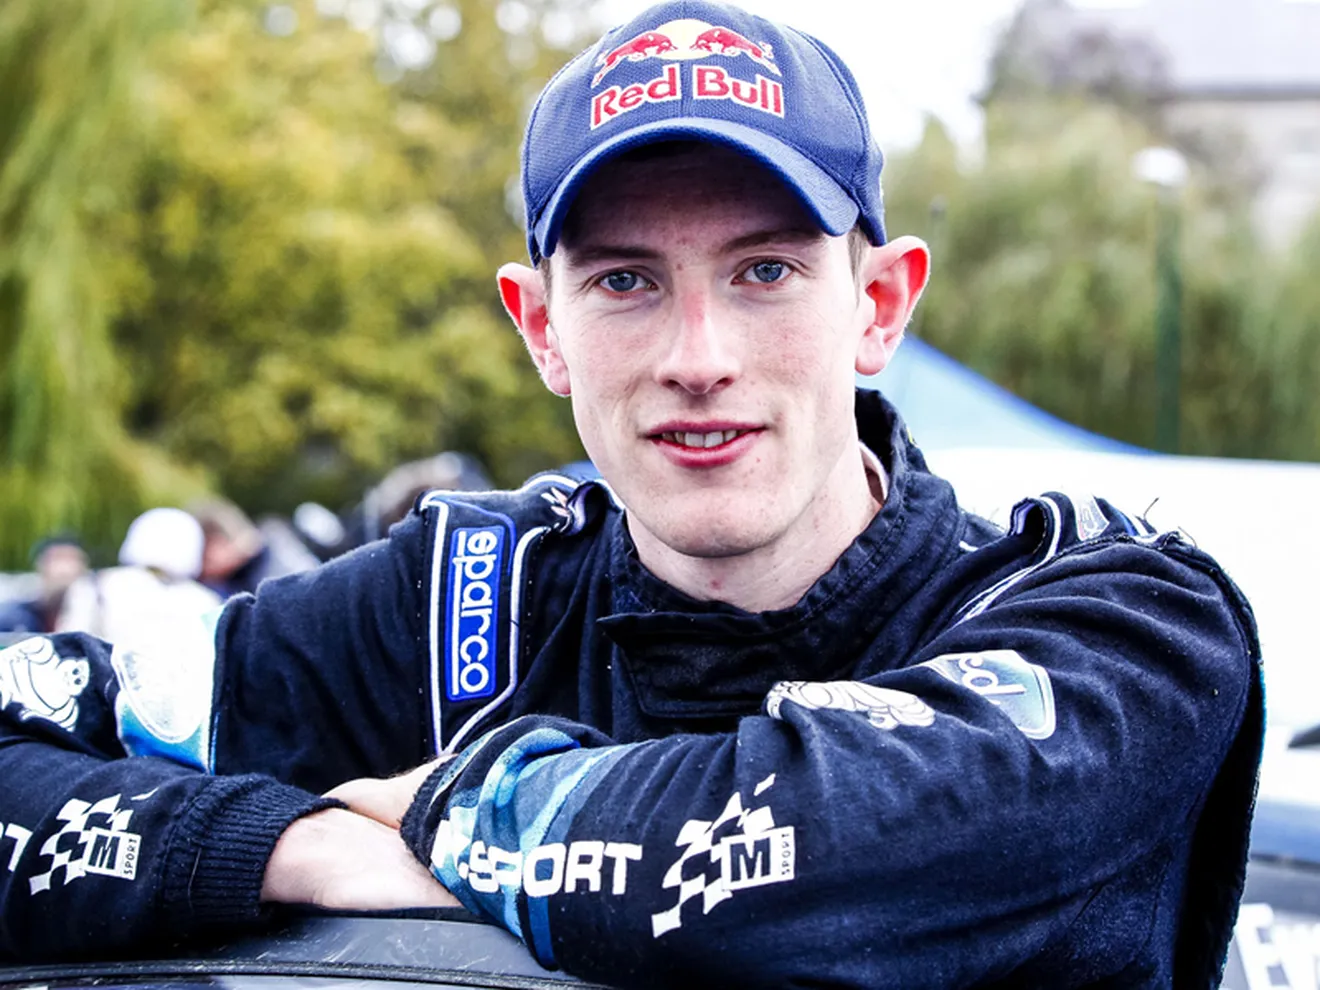 M-Sport confía en Elfyn Evans para ganar el título de WRC2